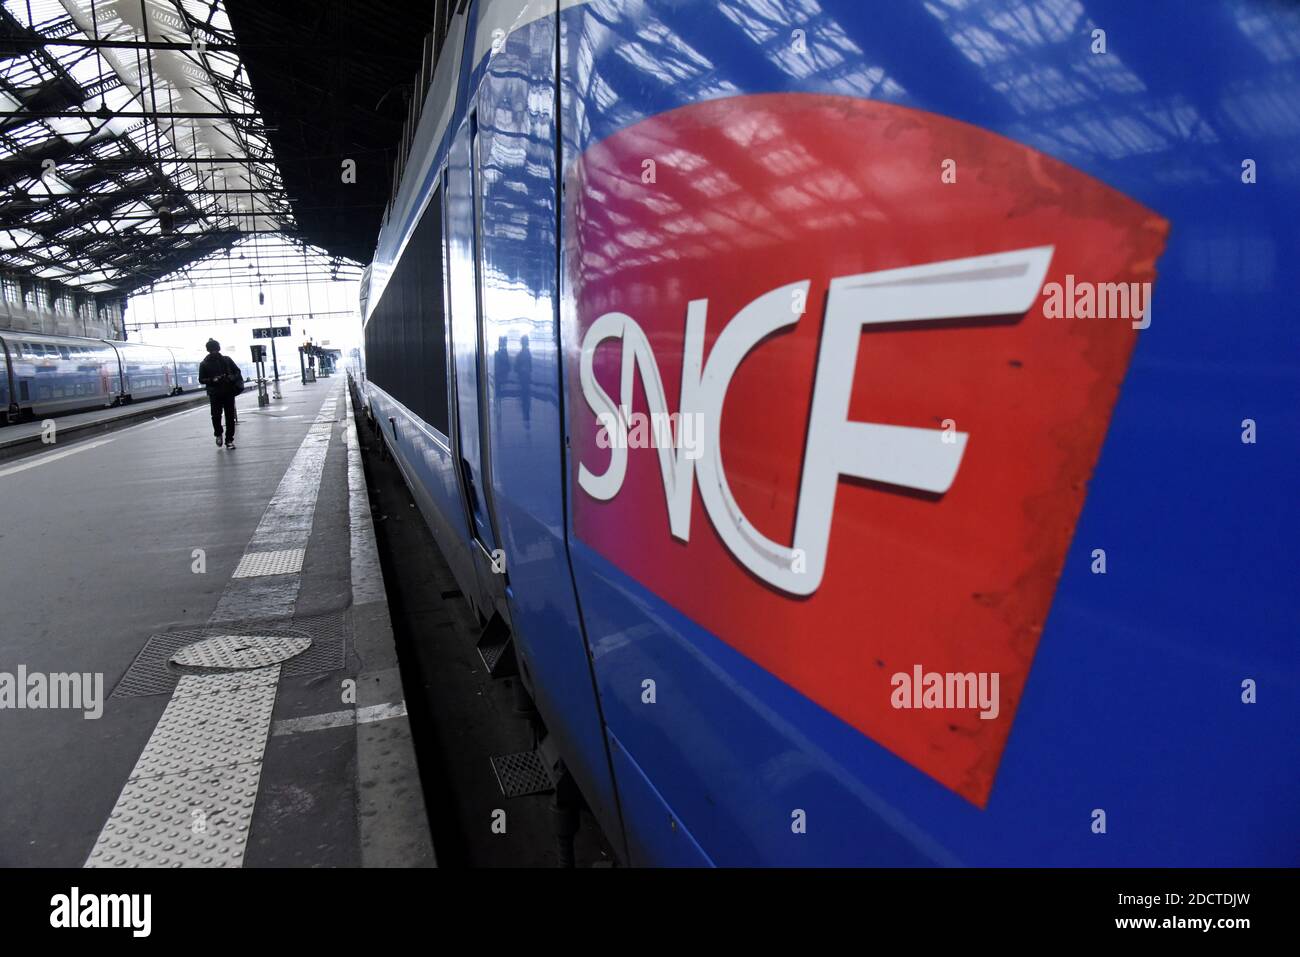 Allgemeine Ansicht des leeren TGV-Bahnhofs Gare De Lyon in Paris, Frankreich, am 9. April 2018, wo fast alle Hochgeschwindigkeitszüge wegen des Streiks abgesagt werden. Die französischen Bahnarbeiter von SNCF und RER begannen drei Monate rollende Streiks, die Teil einer Welle von Arbeitskampfmaßnahmen sind, die Präsident Emmanuel Macrons Entschlossenheit, Frankreich mit umfassenden Reformen neu zu gestalten, auf die Probe stellen wird. Der Streik wird zu Chaos für die 4.5 Millionen französischen Zugpassagiere führen, wobei zwei von fünf Tagen bis Juni 28 Stops geplant sind, es sei denn, Macron lässt sein Angebot fallen, eine Generalüberholung beim staatlichen Eisenbahnunternehmen SNCF zu erzwingen. Foto von Stockfoto